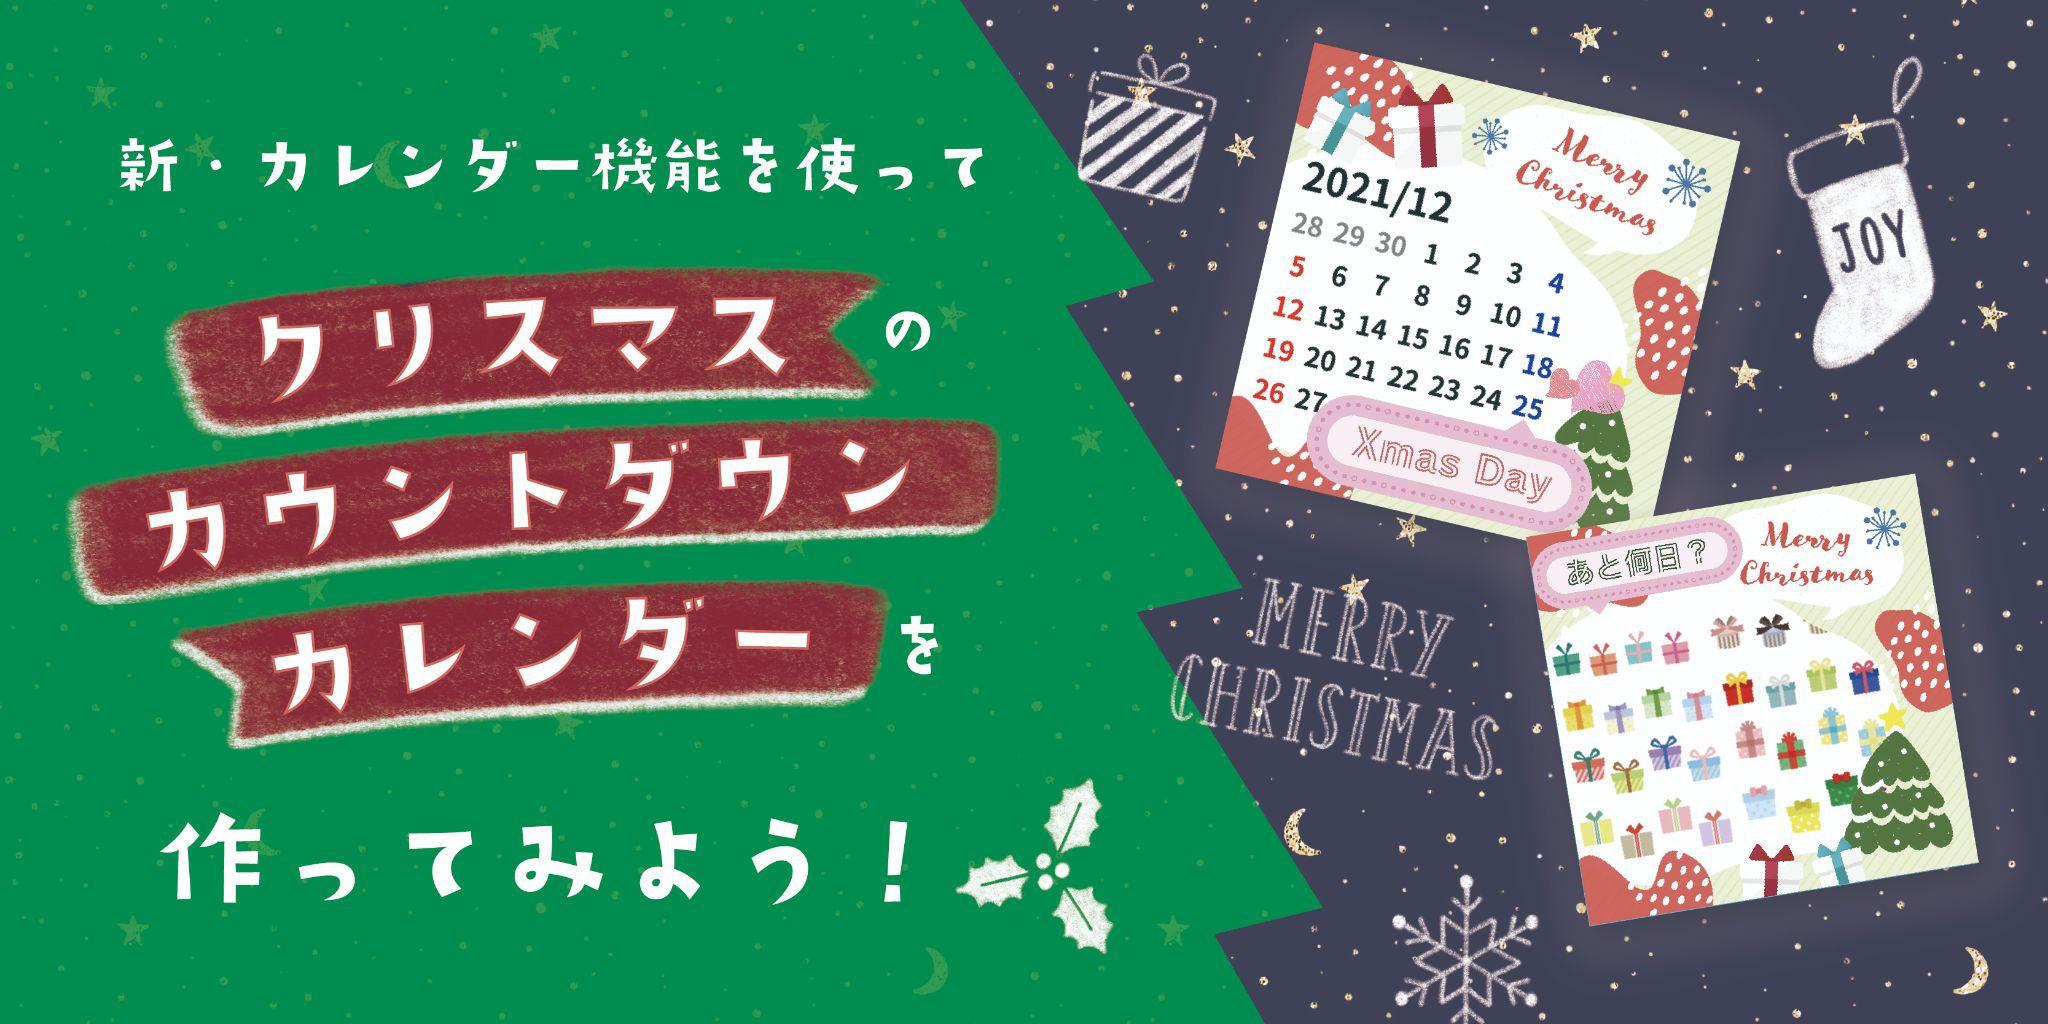 新・カレンダー機能を使って、クリスマスのカウントダウンカレンダーを作ってみよう！